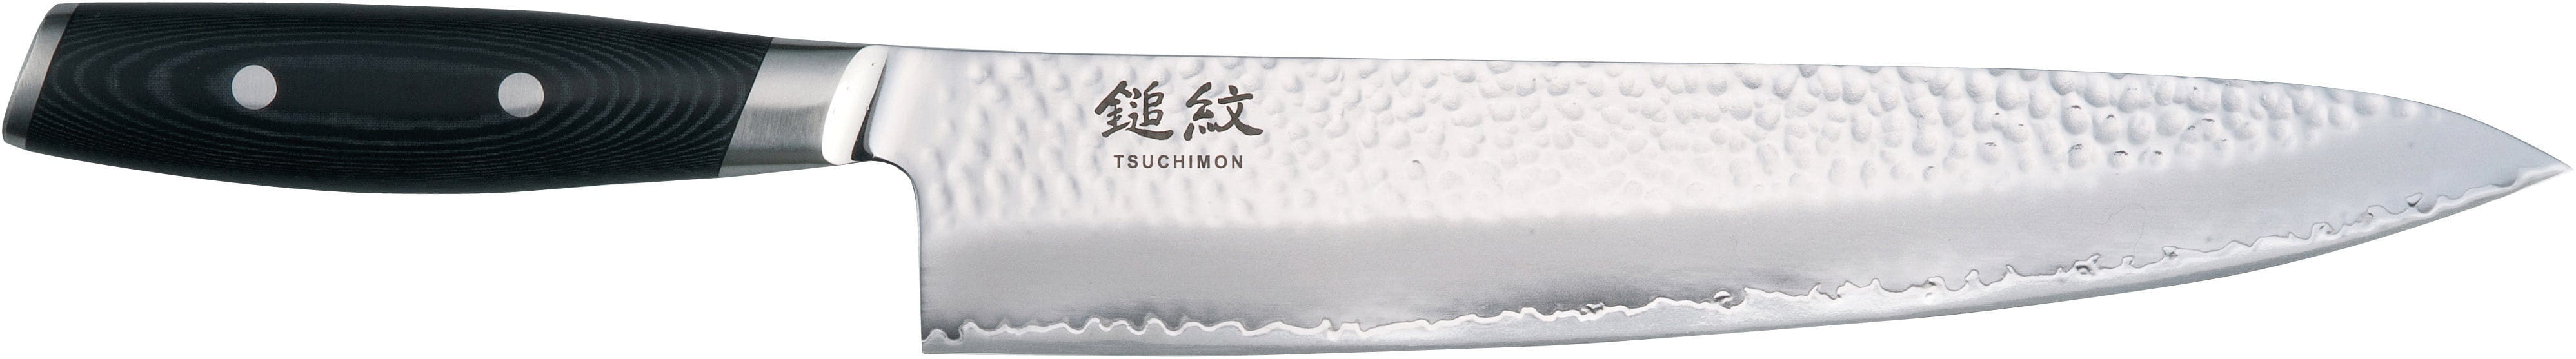 Yaxell Tsuchimon Kochmesser, 25,5 Cm